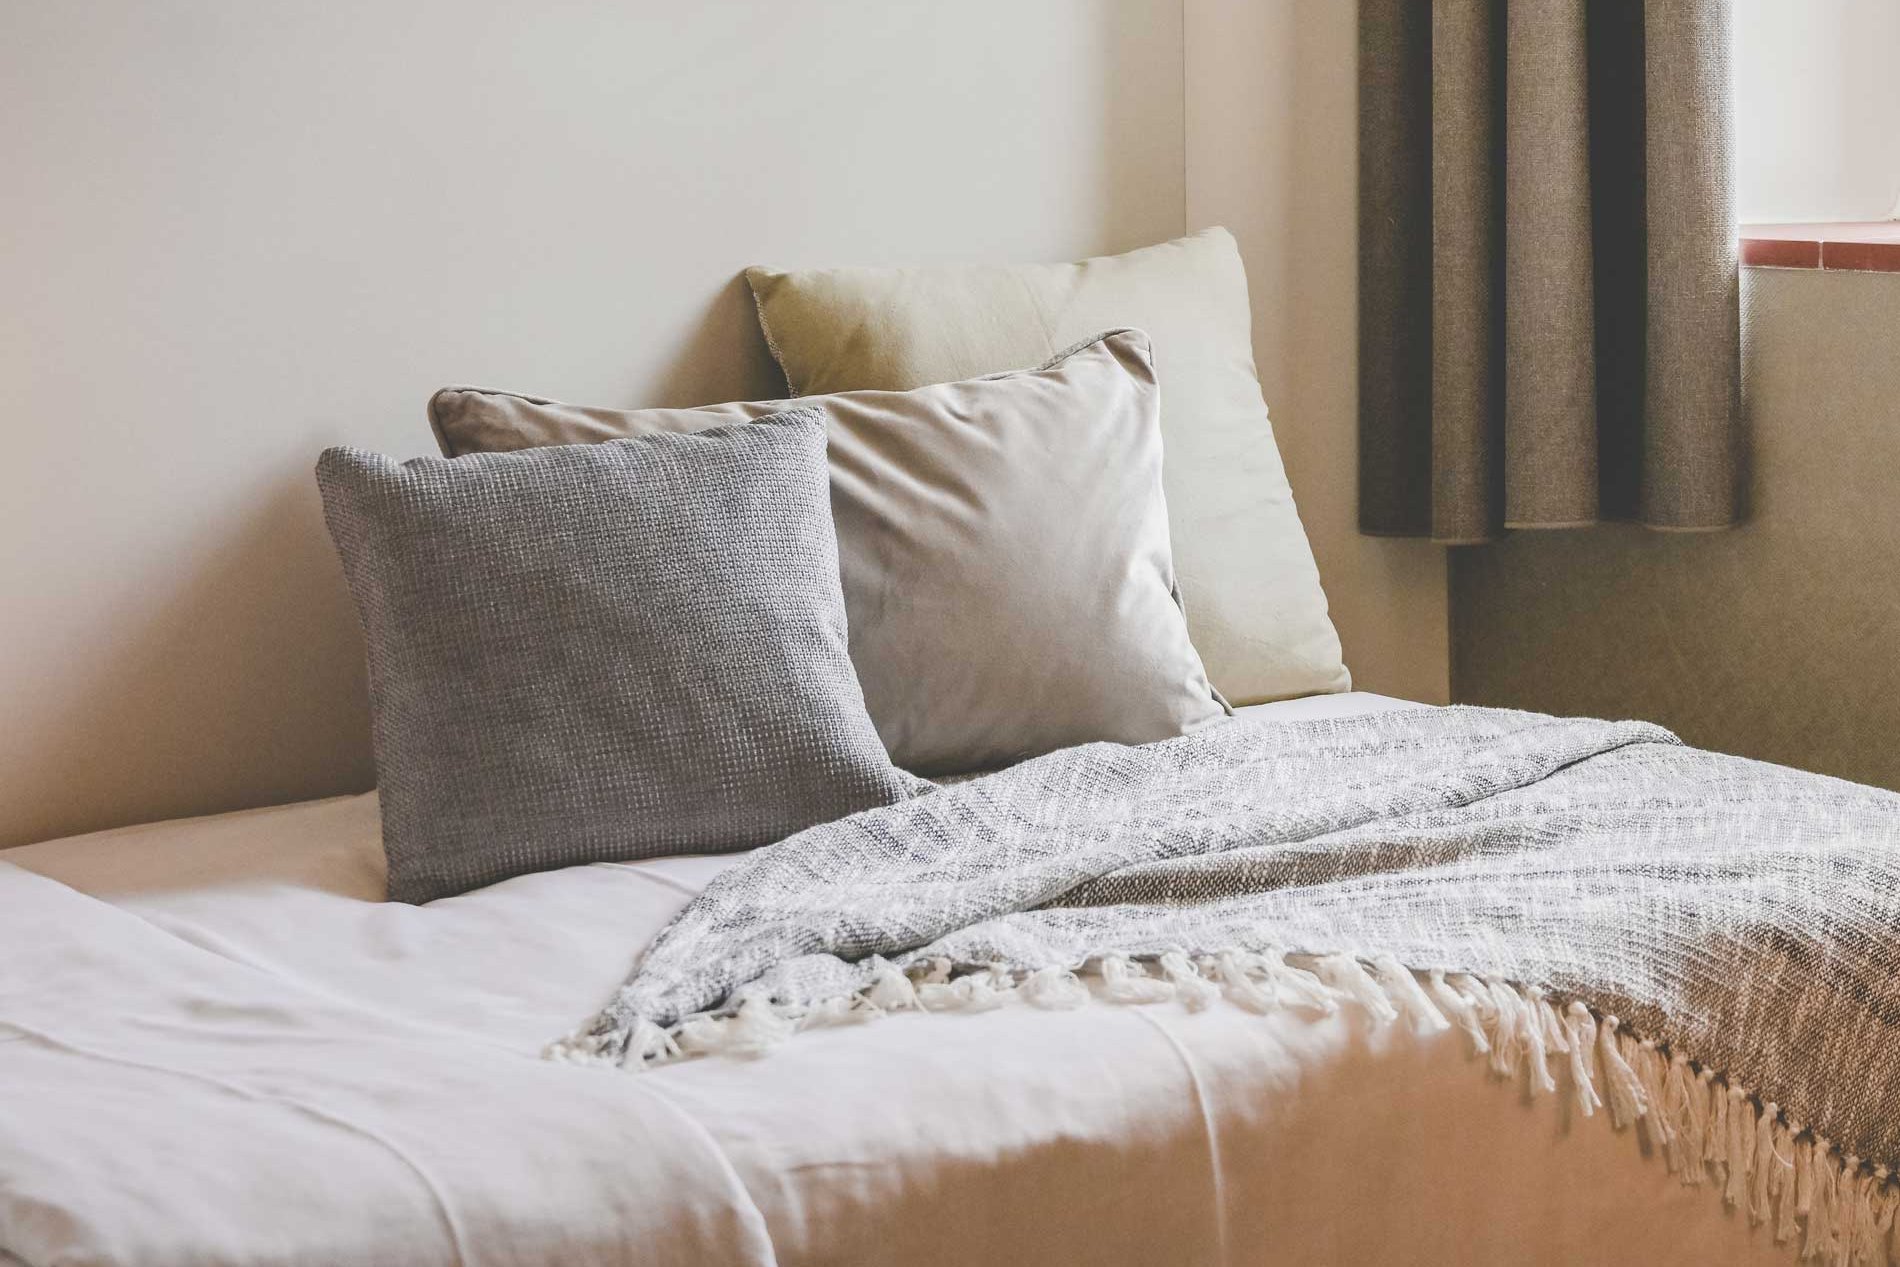 Ein Bett mit Kissen in Erdtönen steht in einem wohnlichen, lichtdurchfluteten Raum neben einem Fenster mit Vorhängen